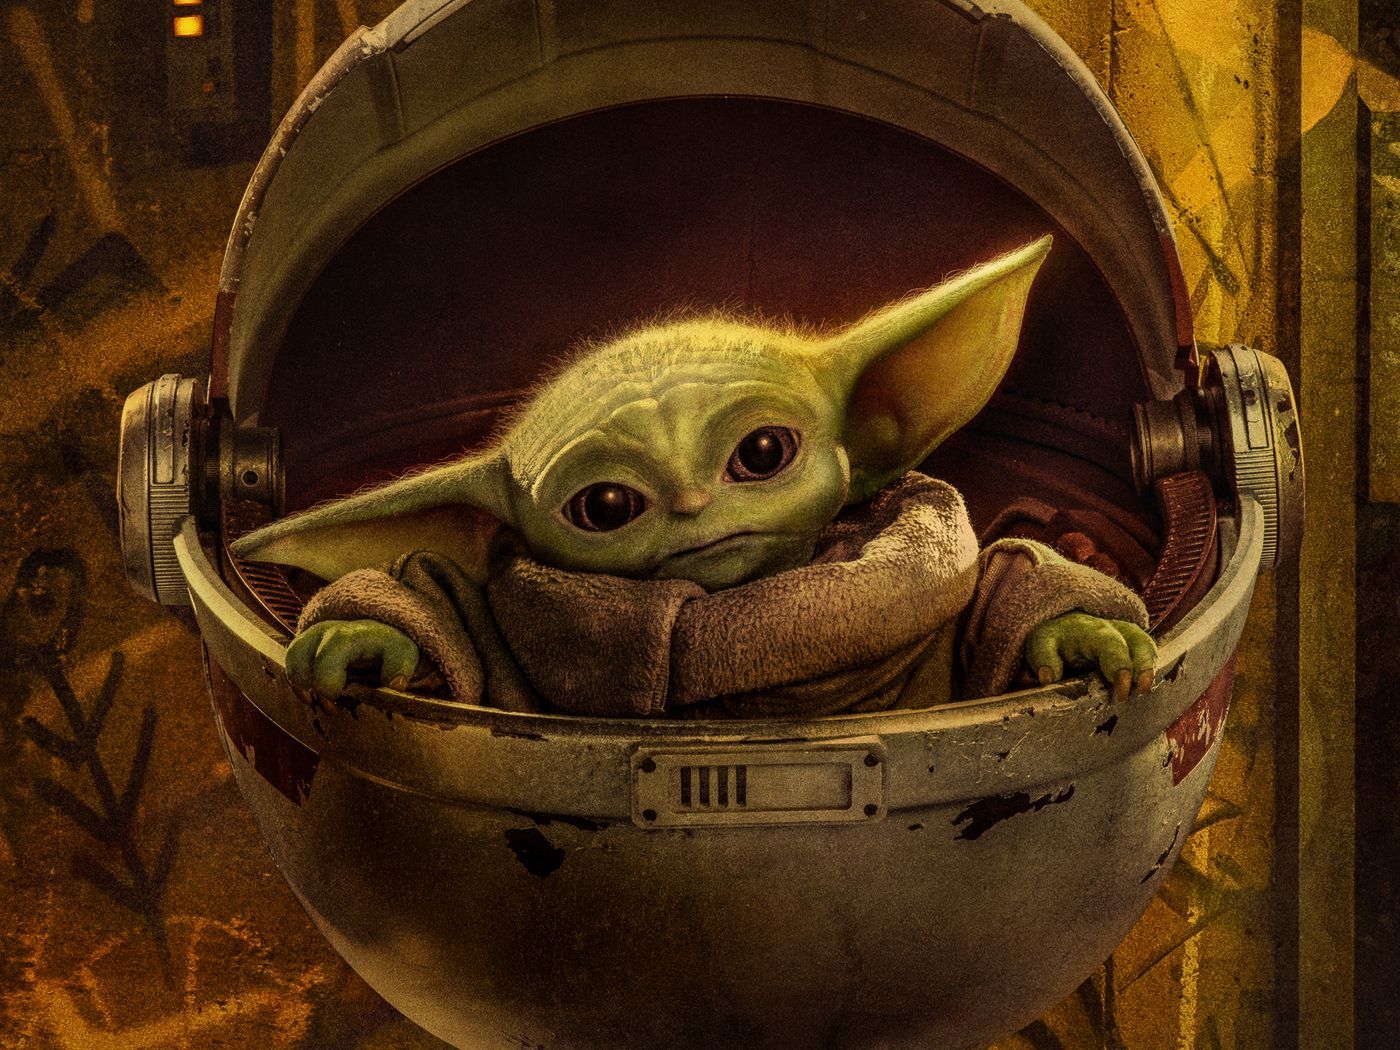 Star Wars: The Mandalorian': New poster art leaks online